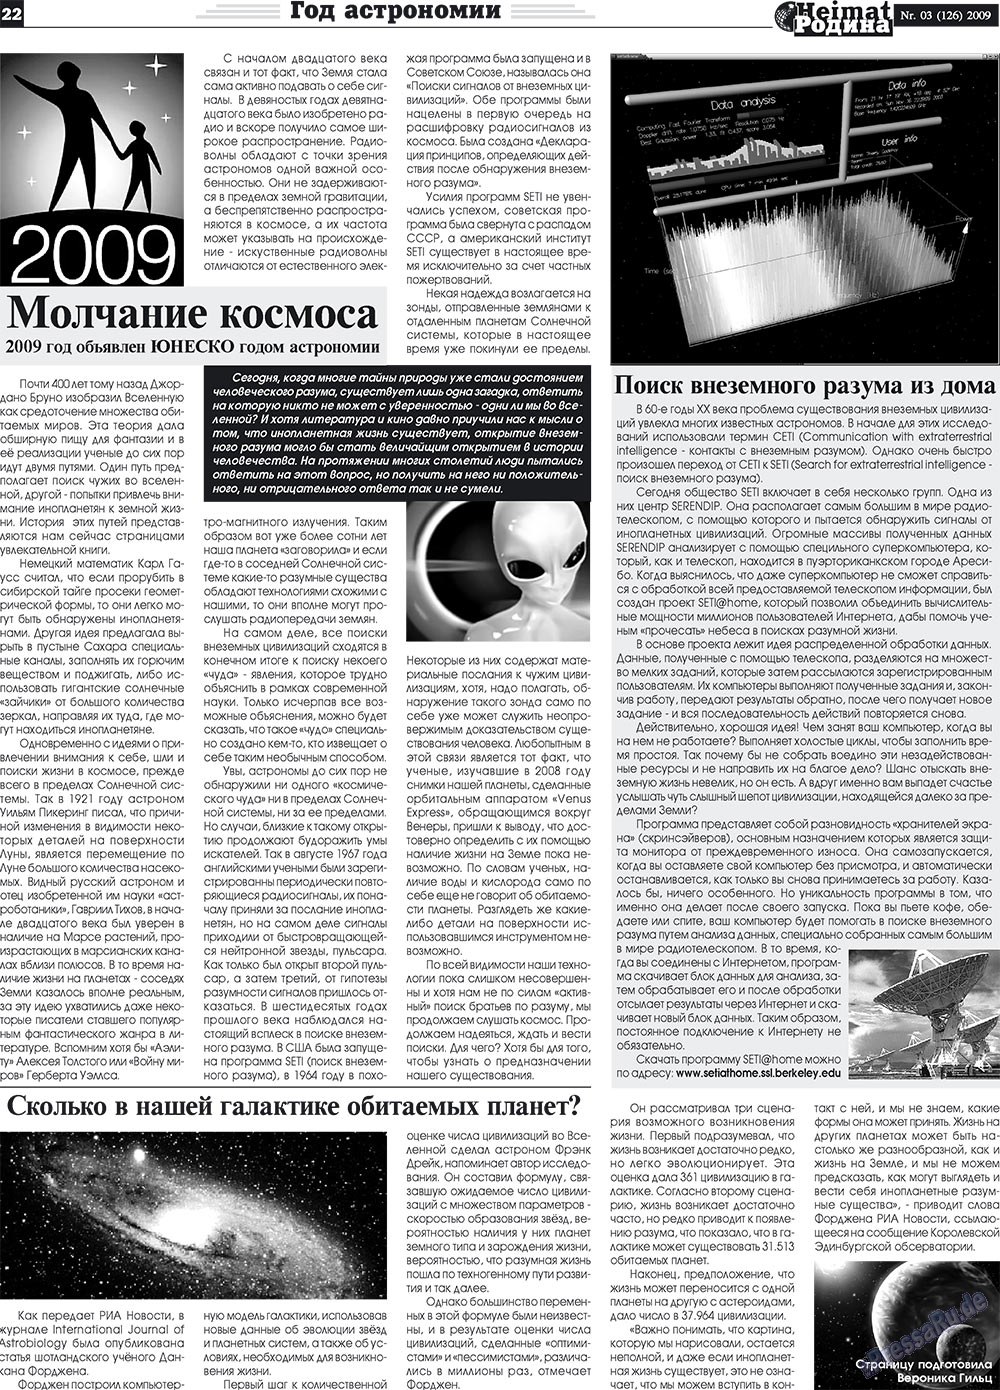 Heimat-Родина (газета). 2009 год, номер 3, стр. 22